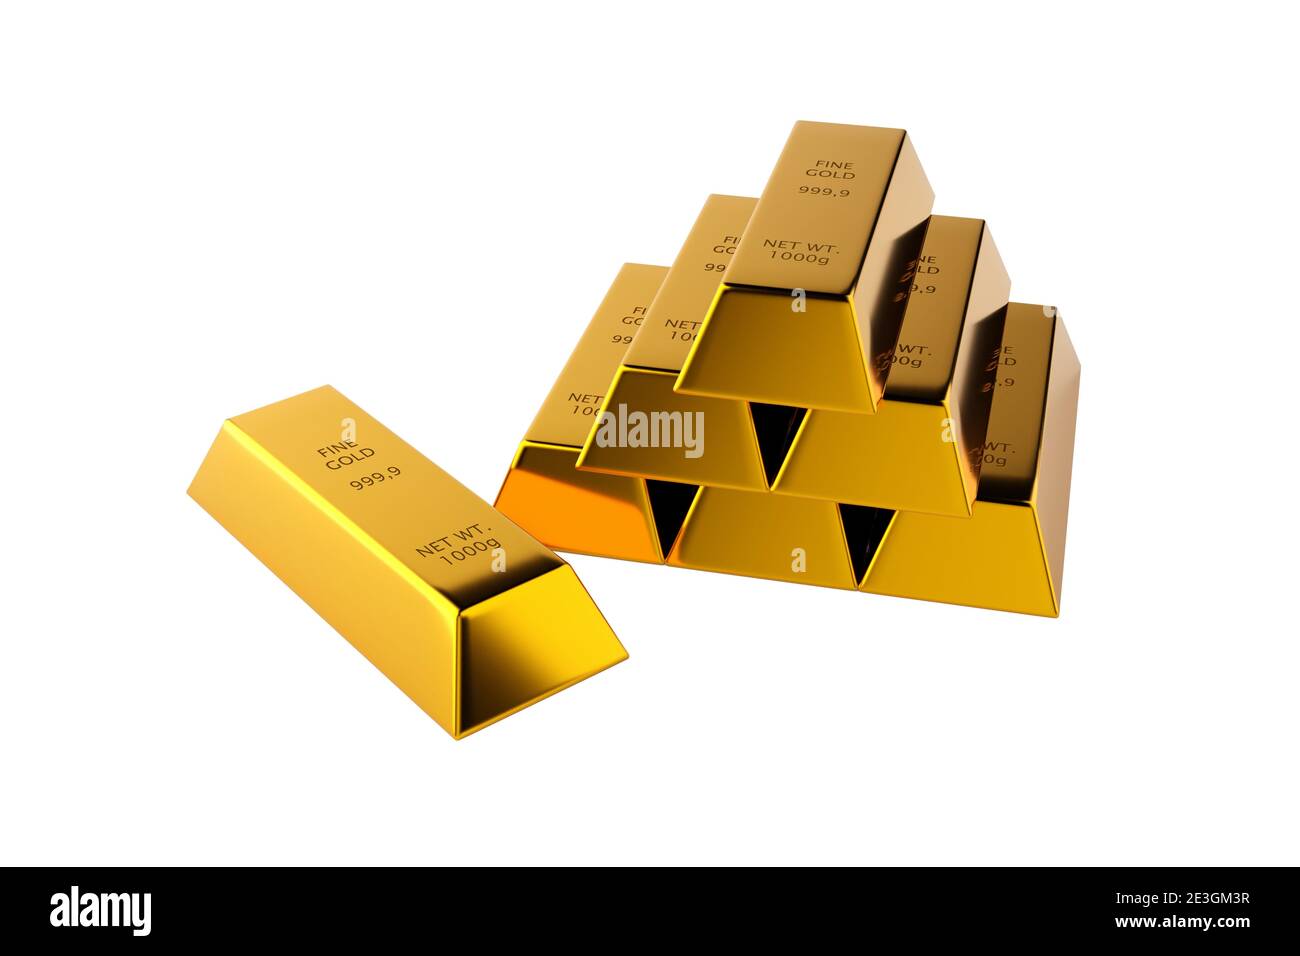 Glänzende Goldbarren oder Barren Pyramide mit einzelnen Goldbarren vorne über weißem Hintergrund - Edelmetall- oder Geldinvestitionskonzept, 3D-Illustration Stockfoto